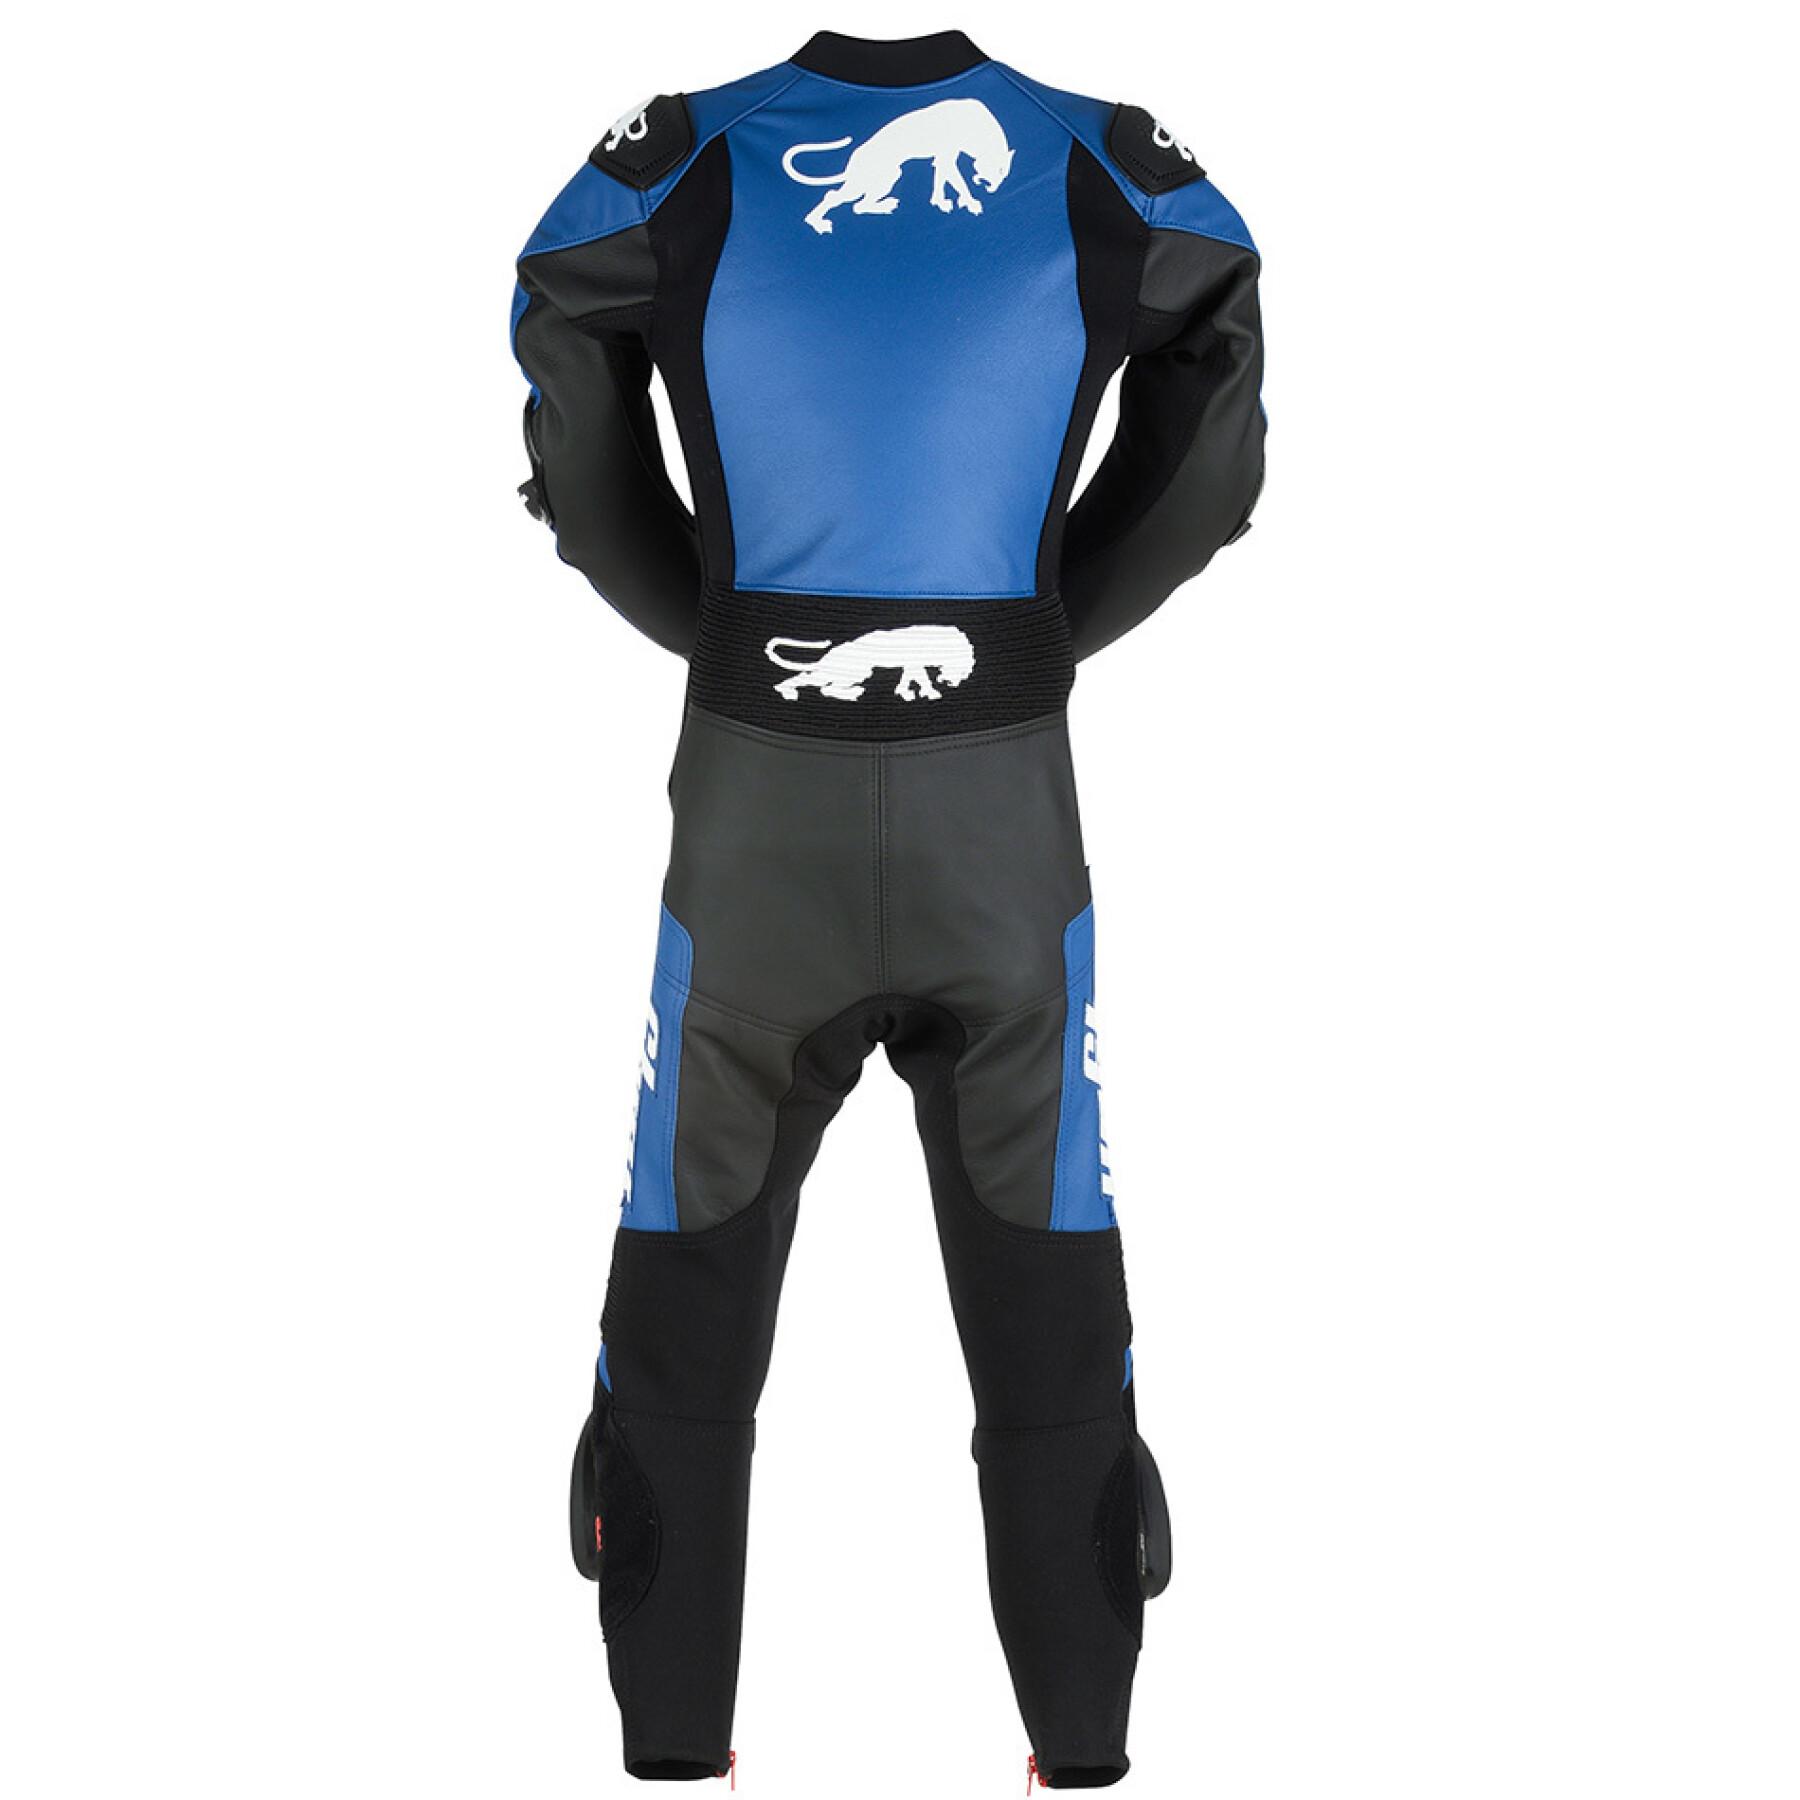 Motorcycle suit for children Furygan Evo